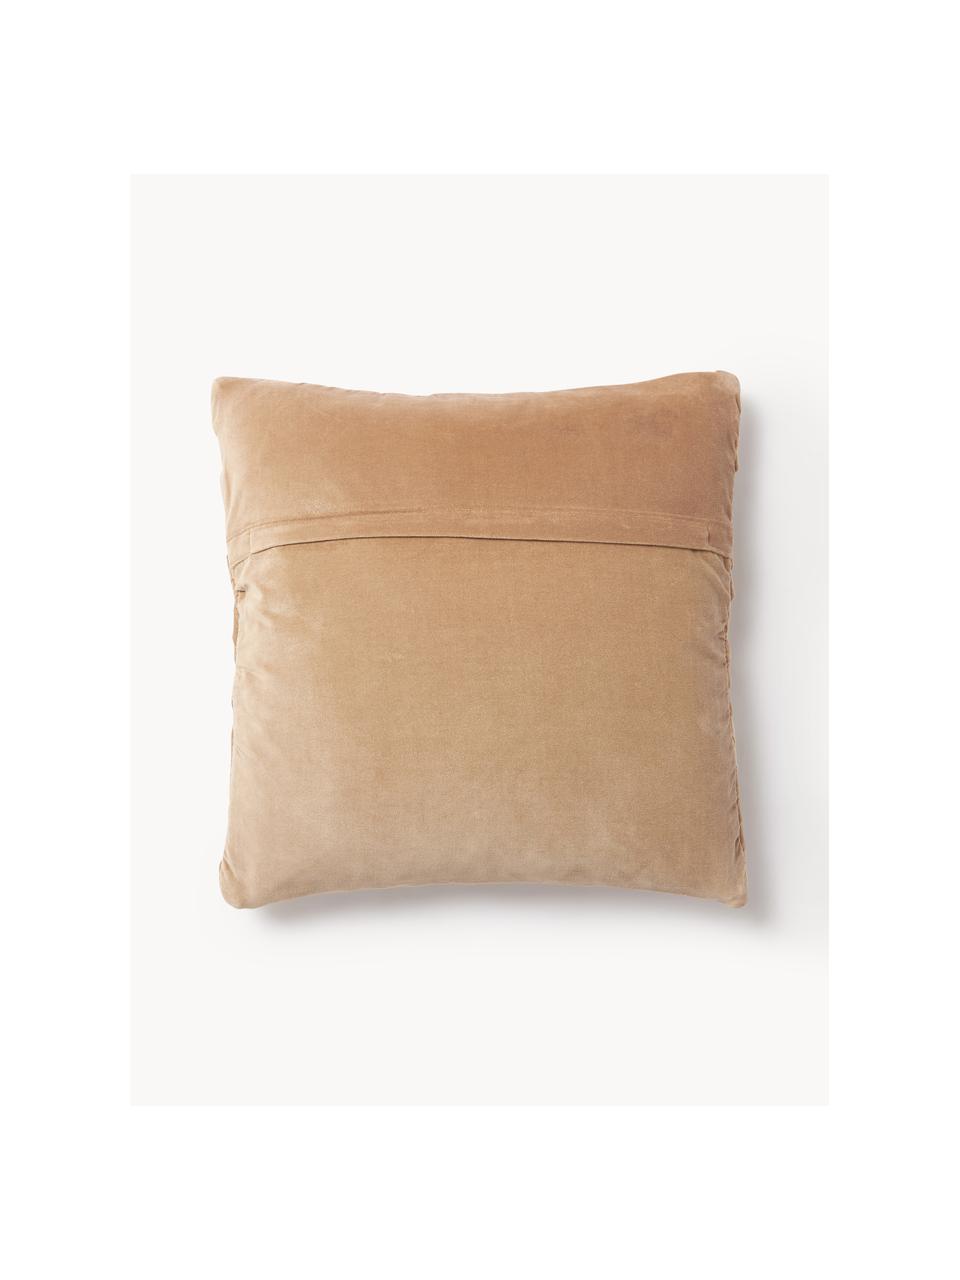 Poszewka na poduszkę z aksamitu Sina, Aksamit (100% bawełna), Ochrowy, S 45 x D 45 cm